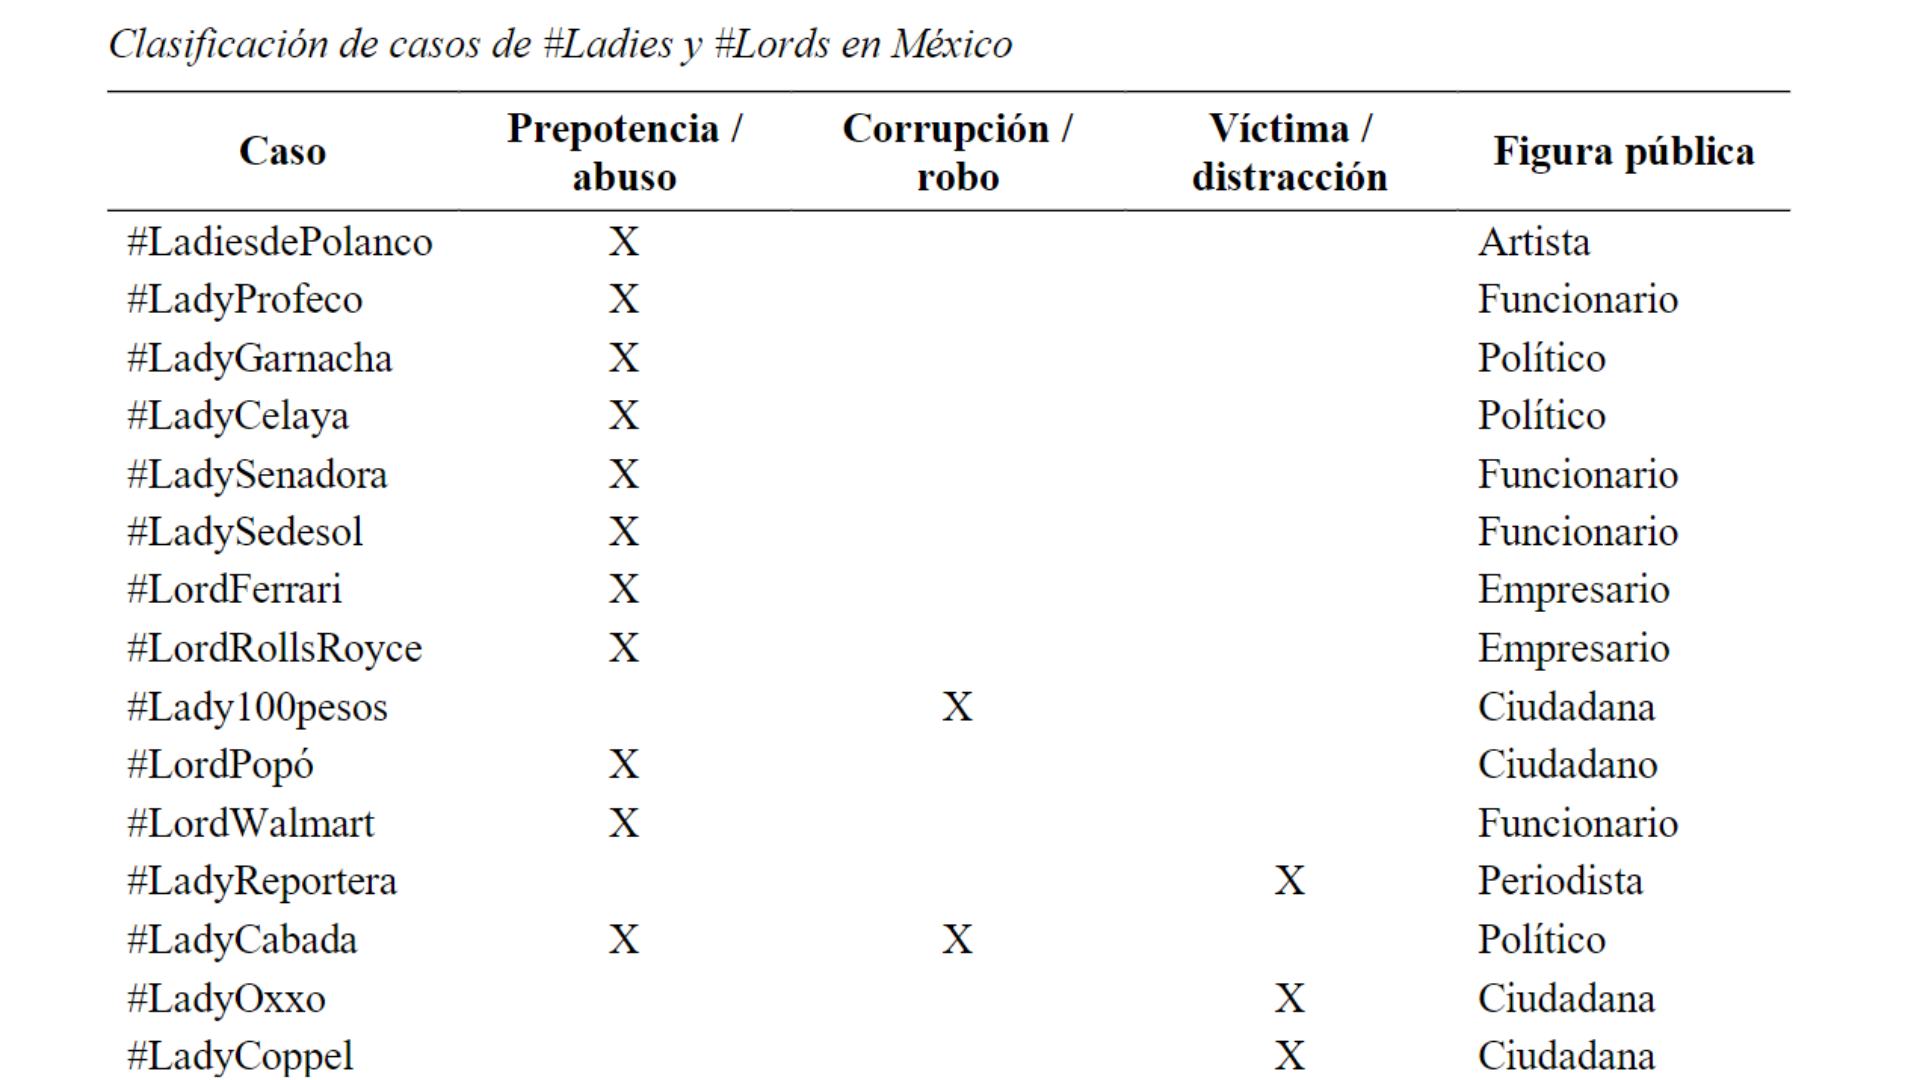 Los 33 casos más virales de México entre el 2011 al 2019 según investigadores de la Universidad Autónoma del Estado de México, (captura de pantalla del artículo publicado en el Global Media Journal Mexico)